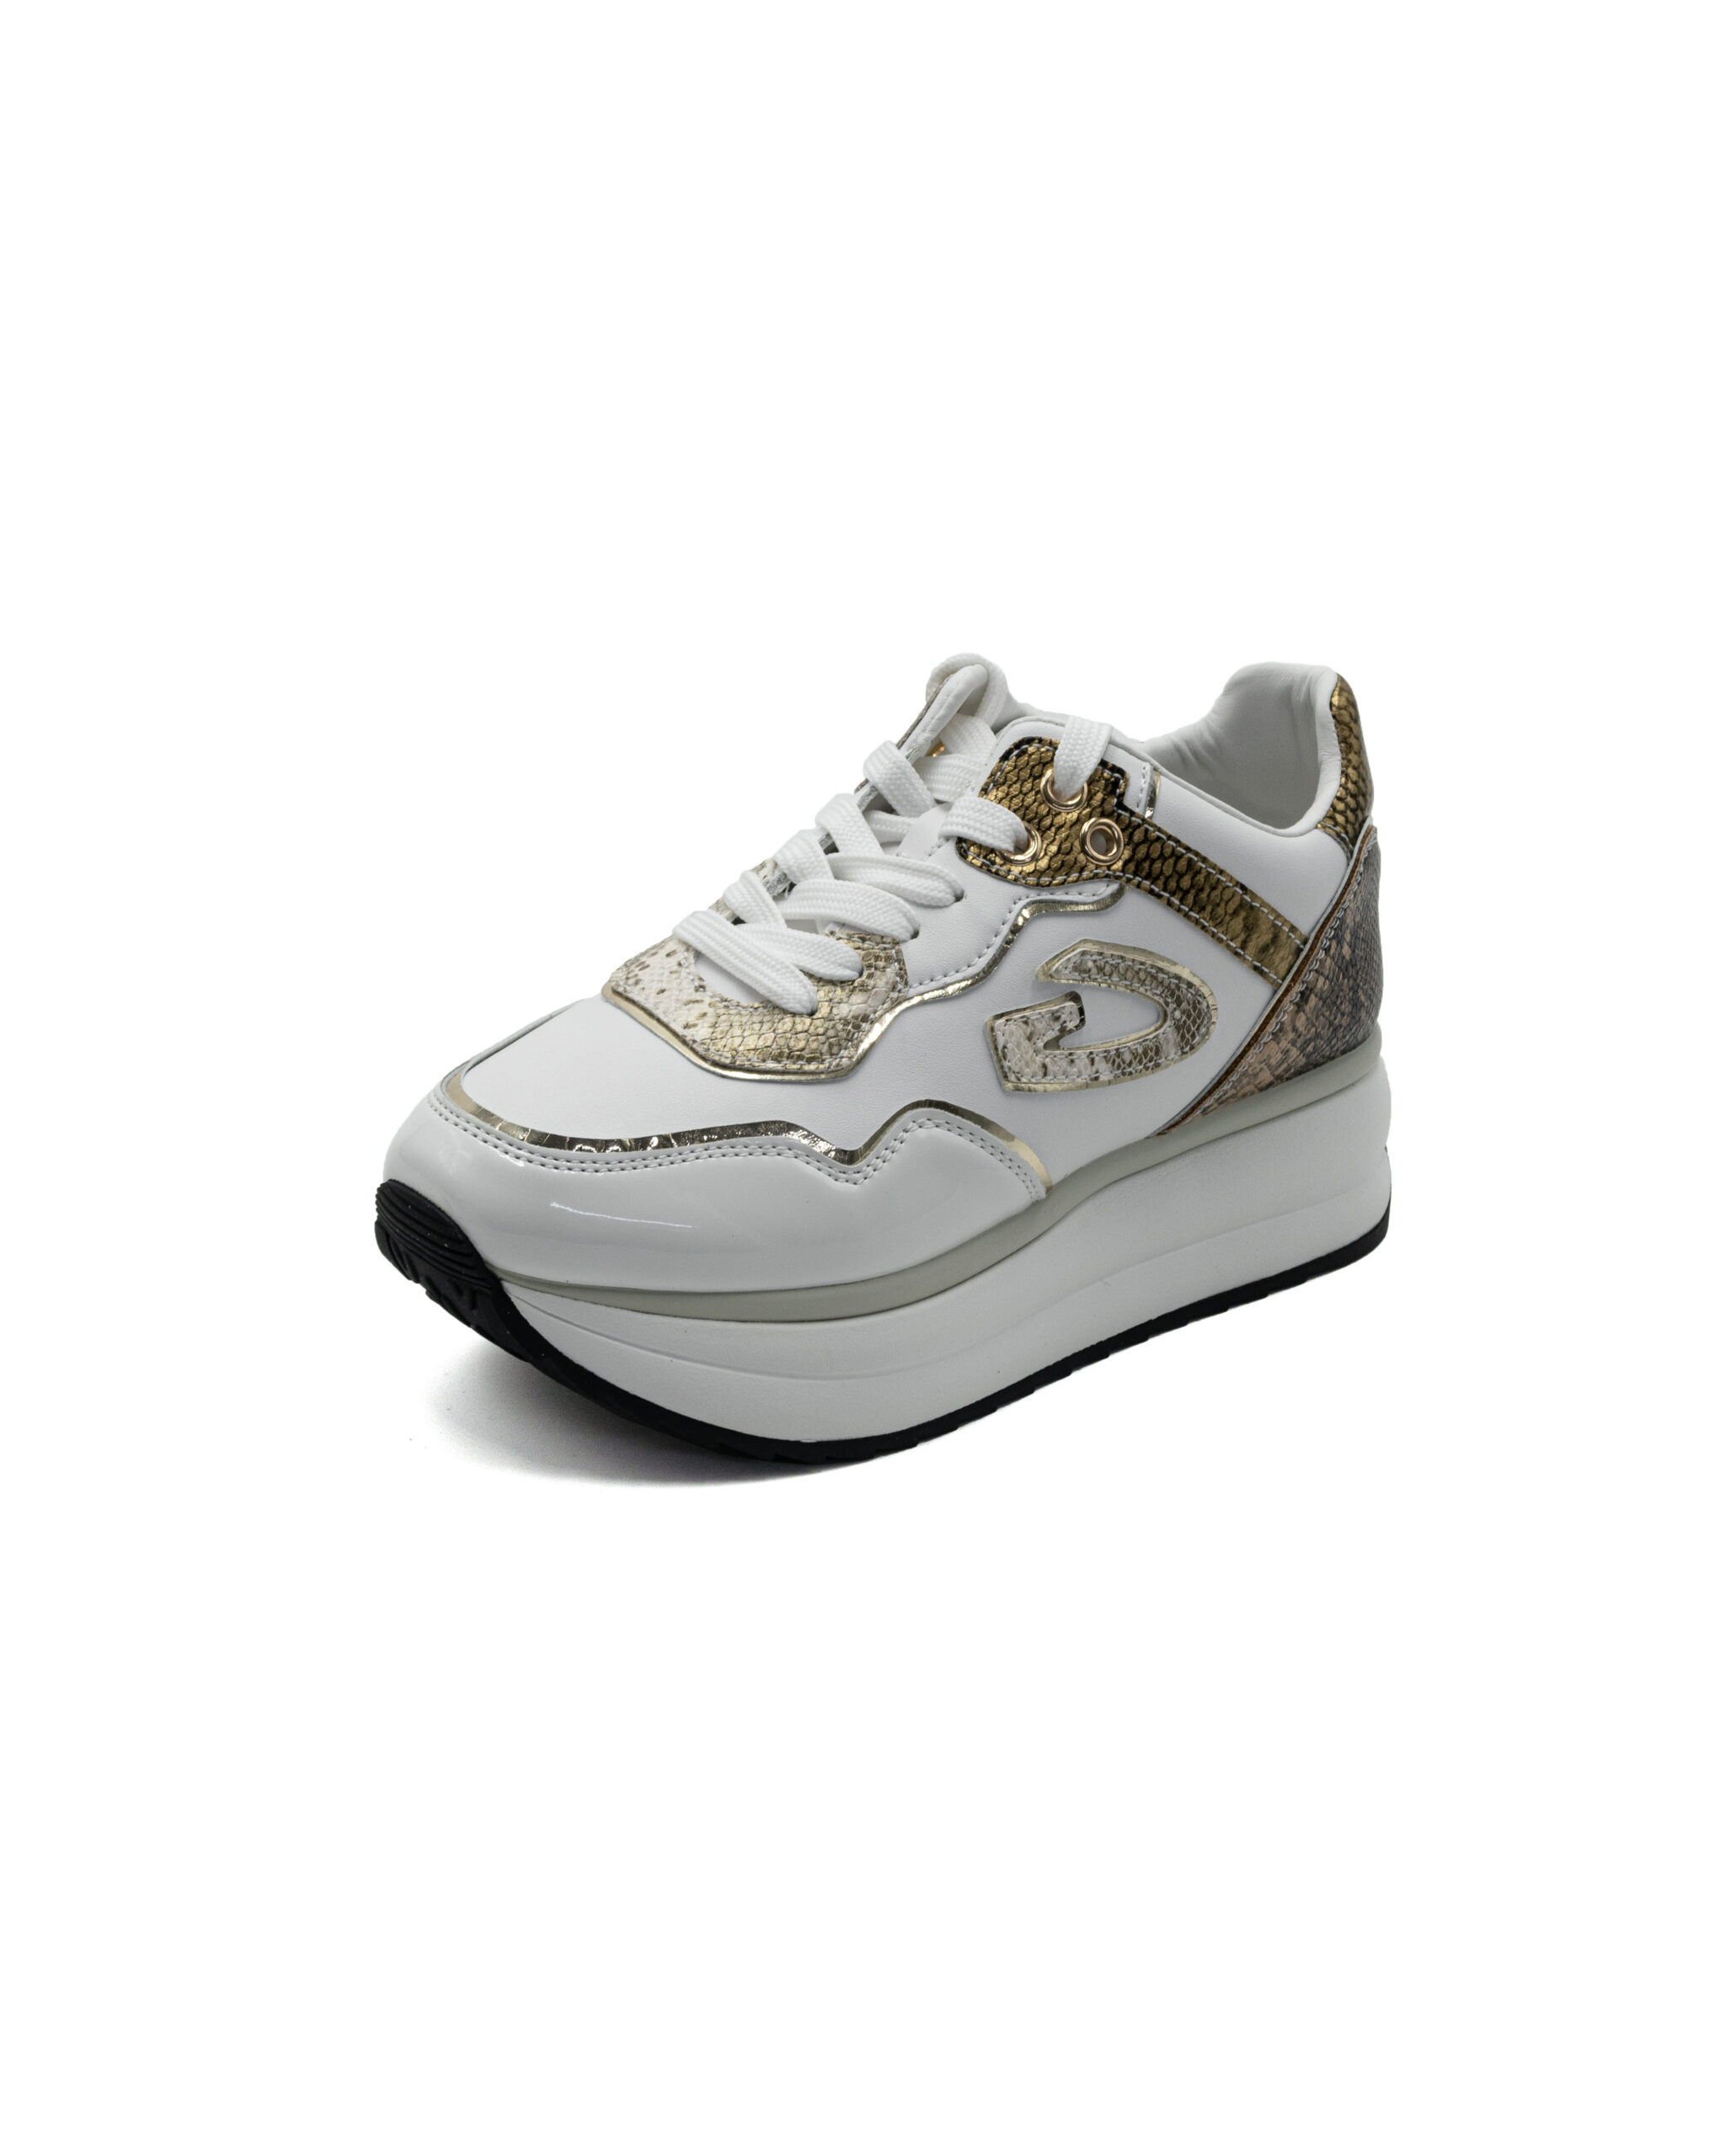 (image for) Sneakers Guardiani bianche con inserti pitonati e laminati oro